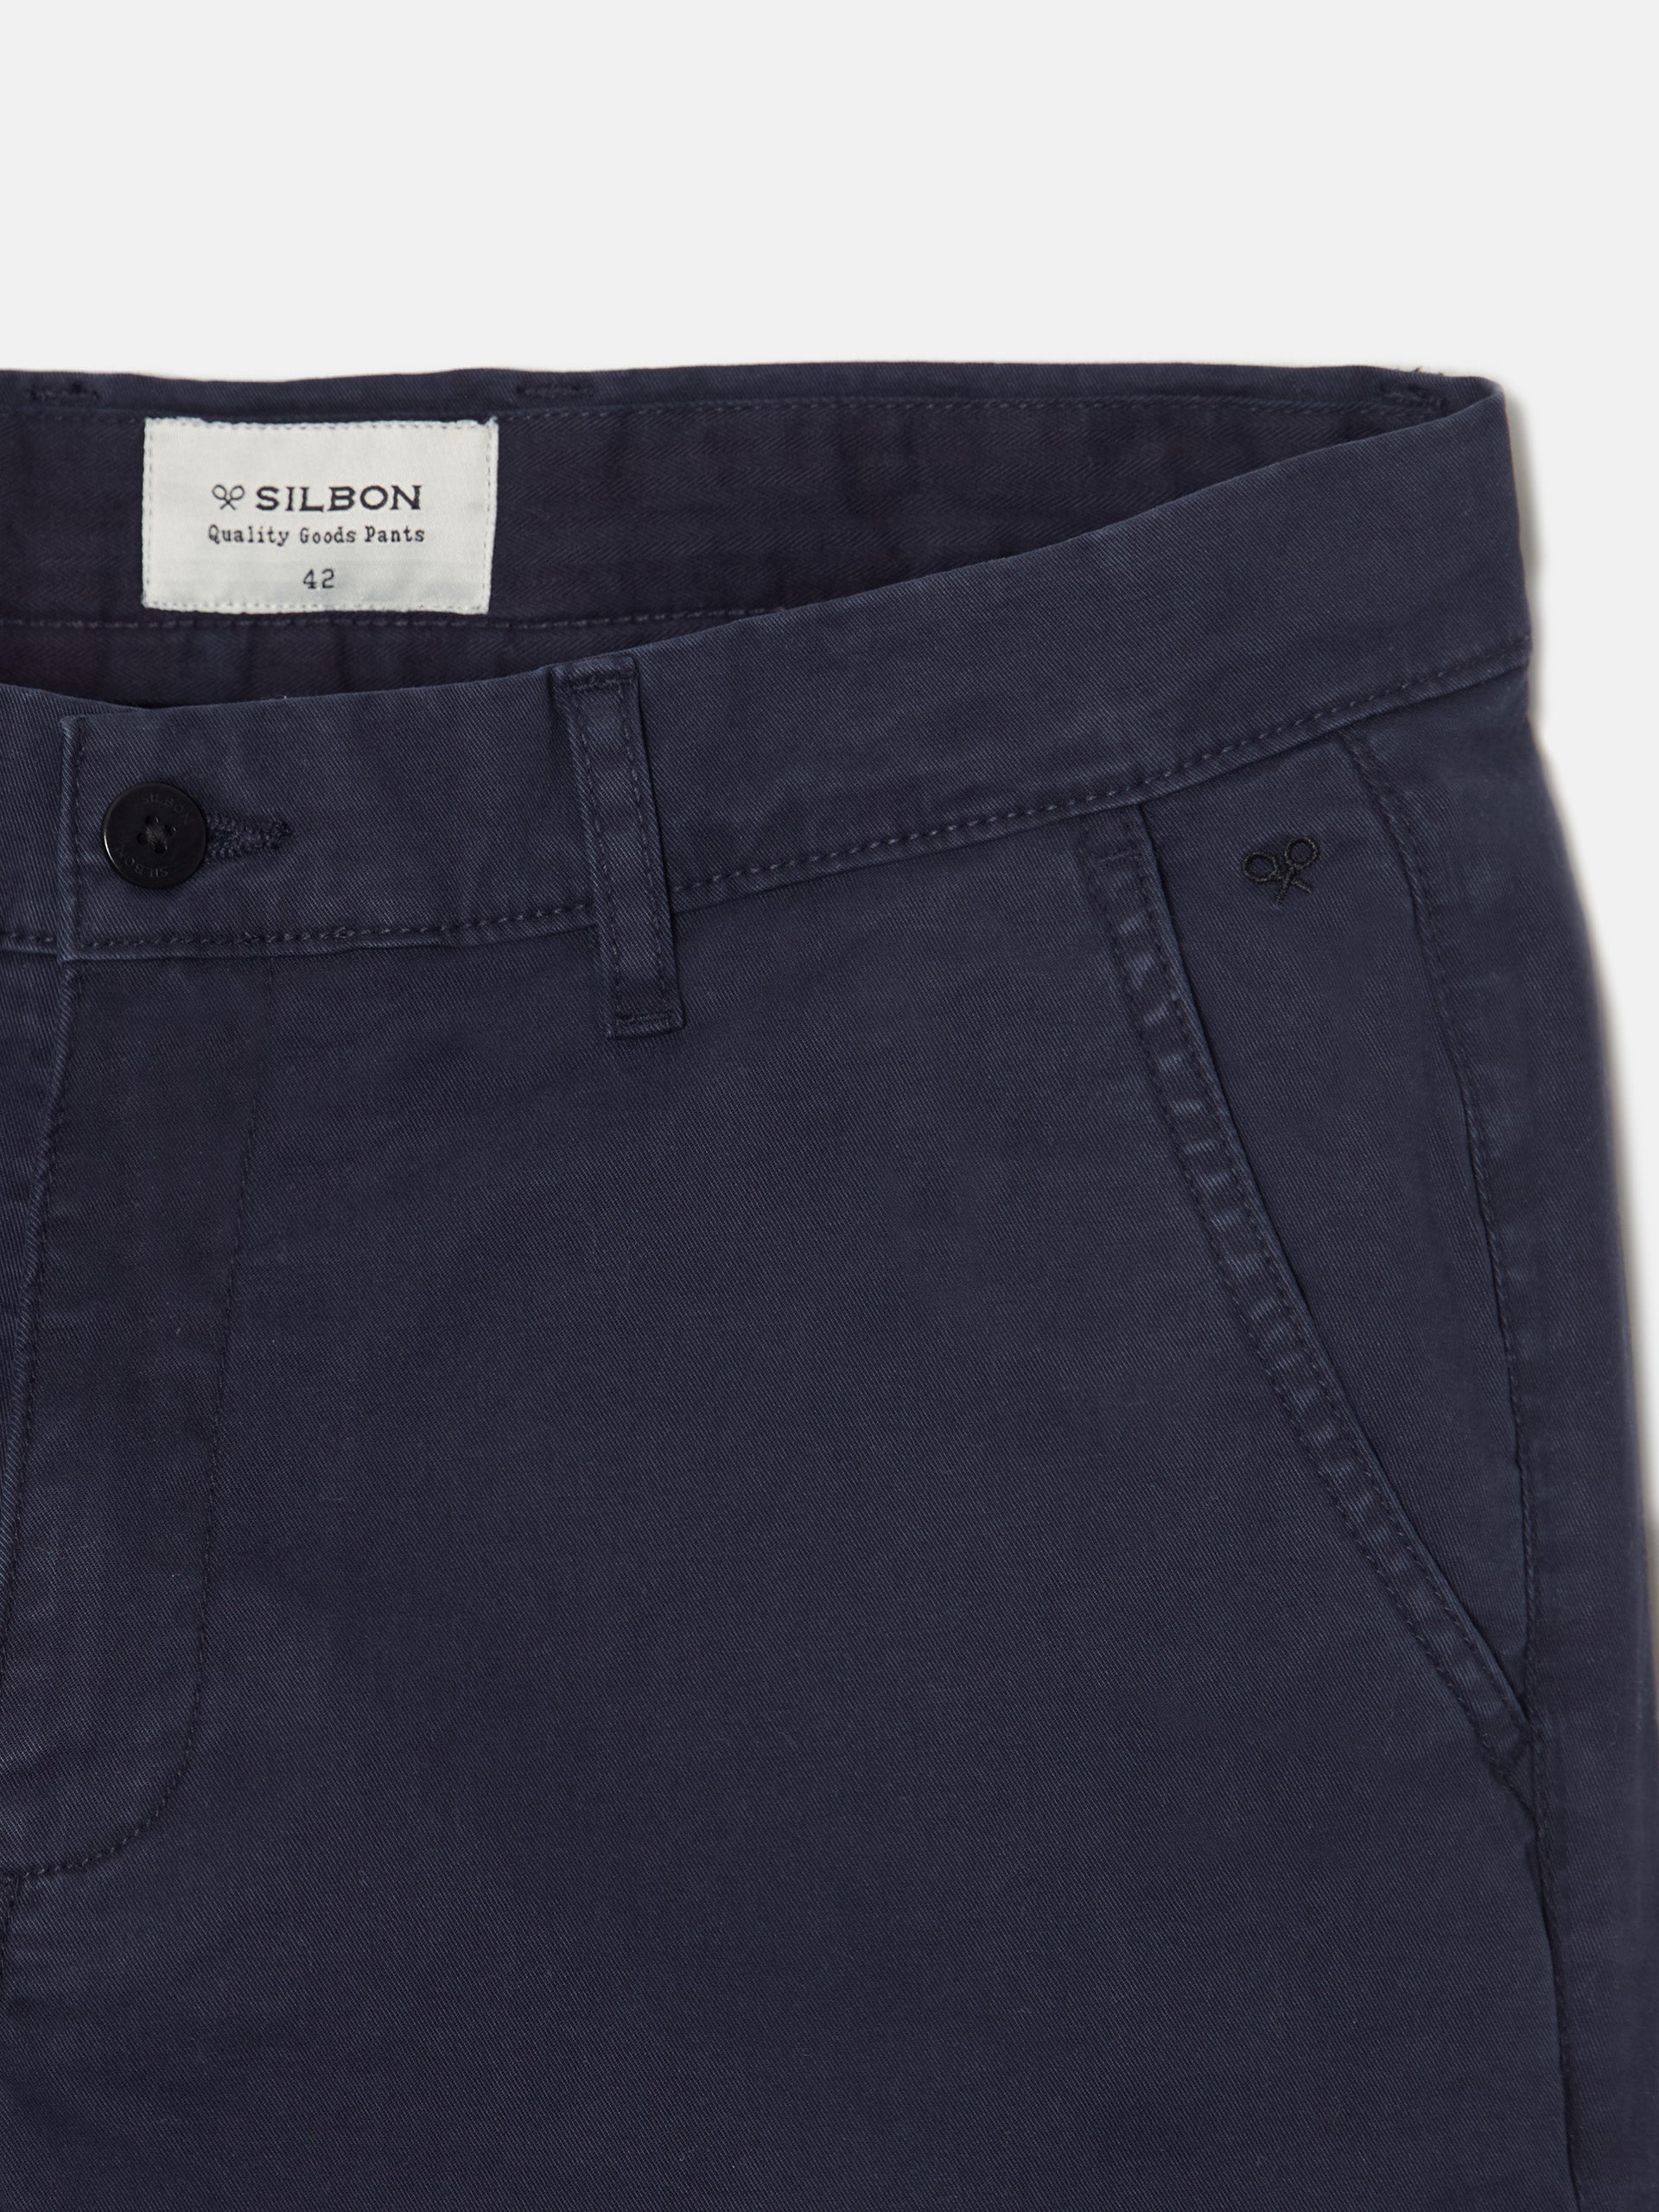 Dark blue chino sport pants